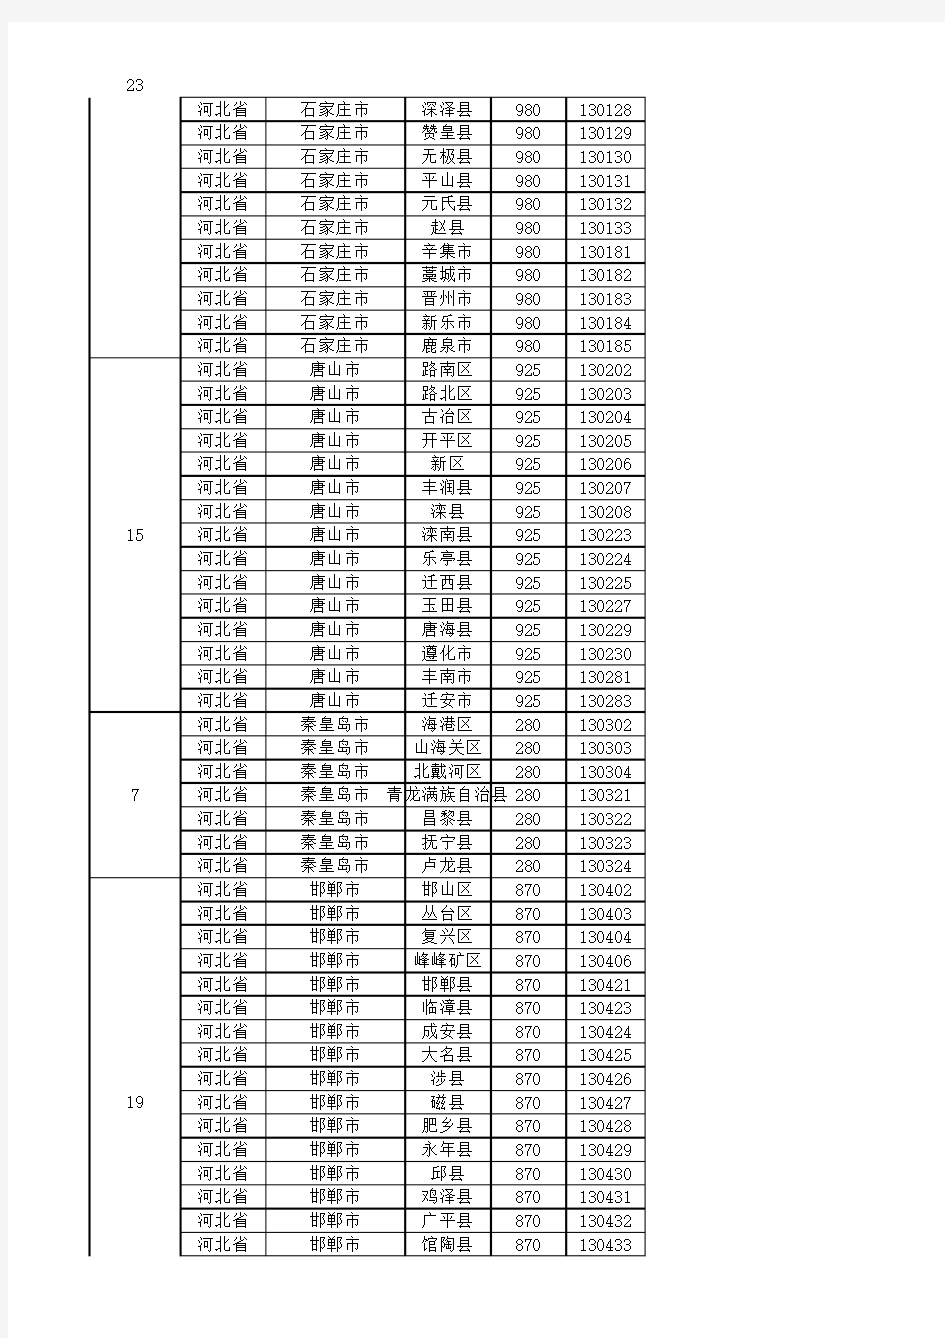 2014年31省市县区行政级别对照表最新